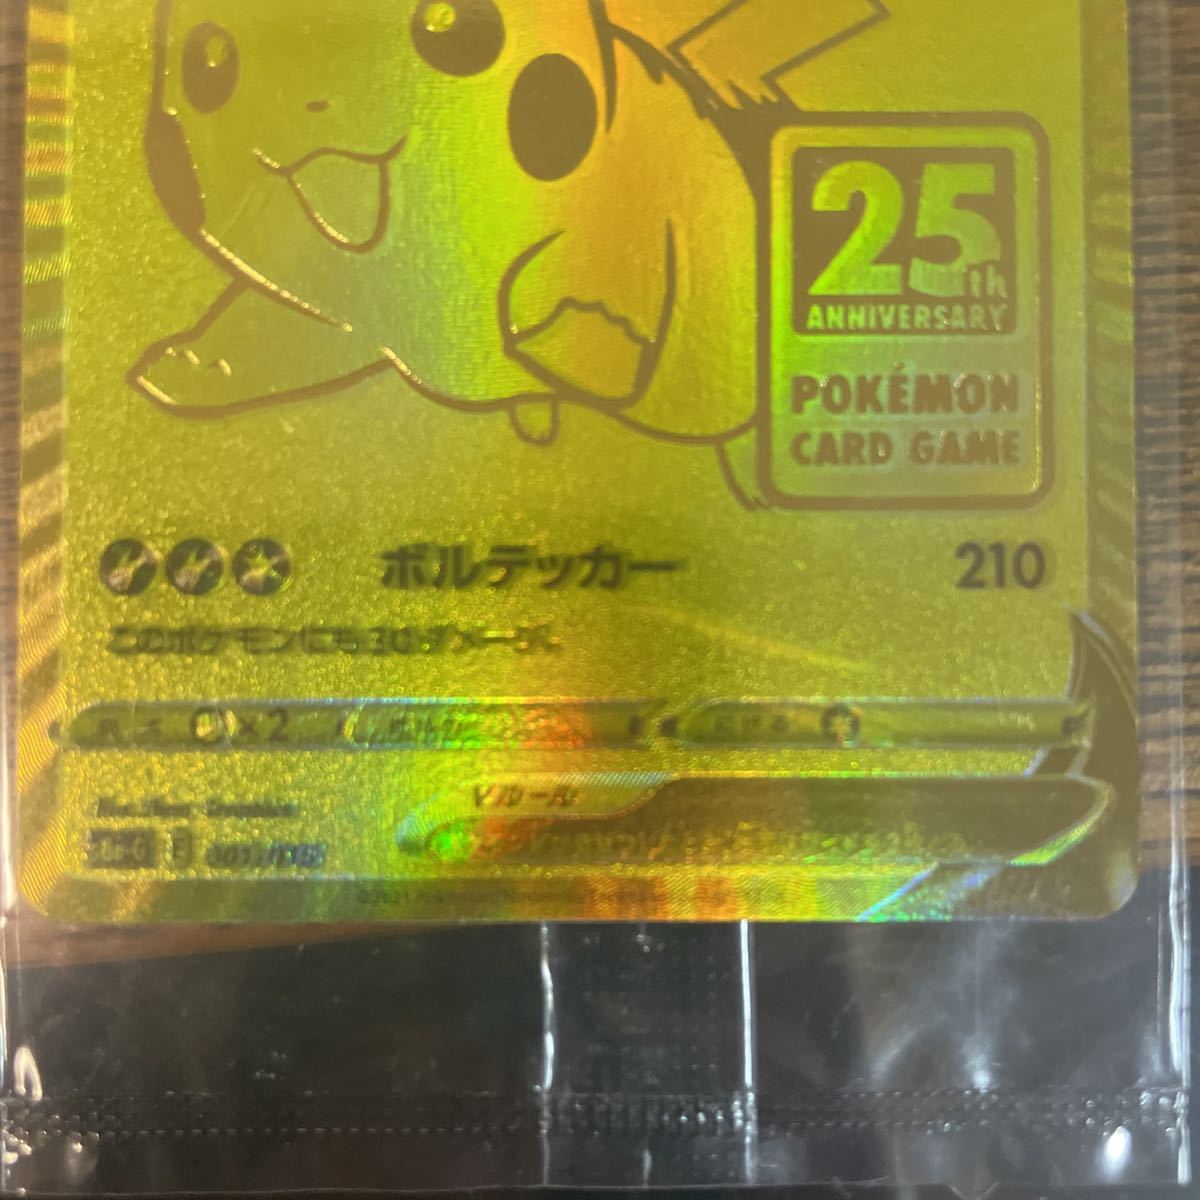 ポケモンカード 25th anniversary golden box ゴルピカ ゴールデン